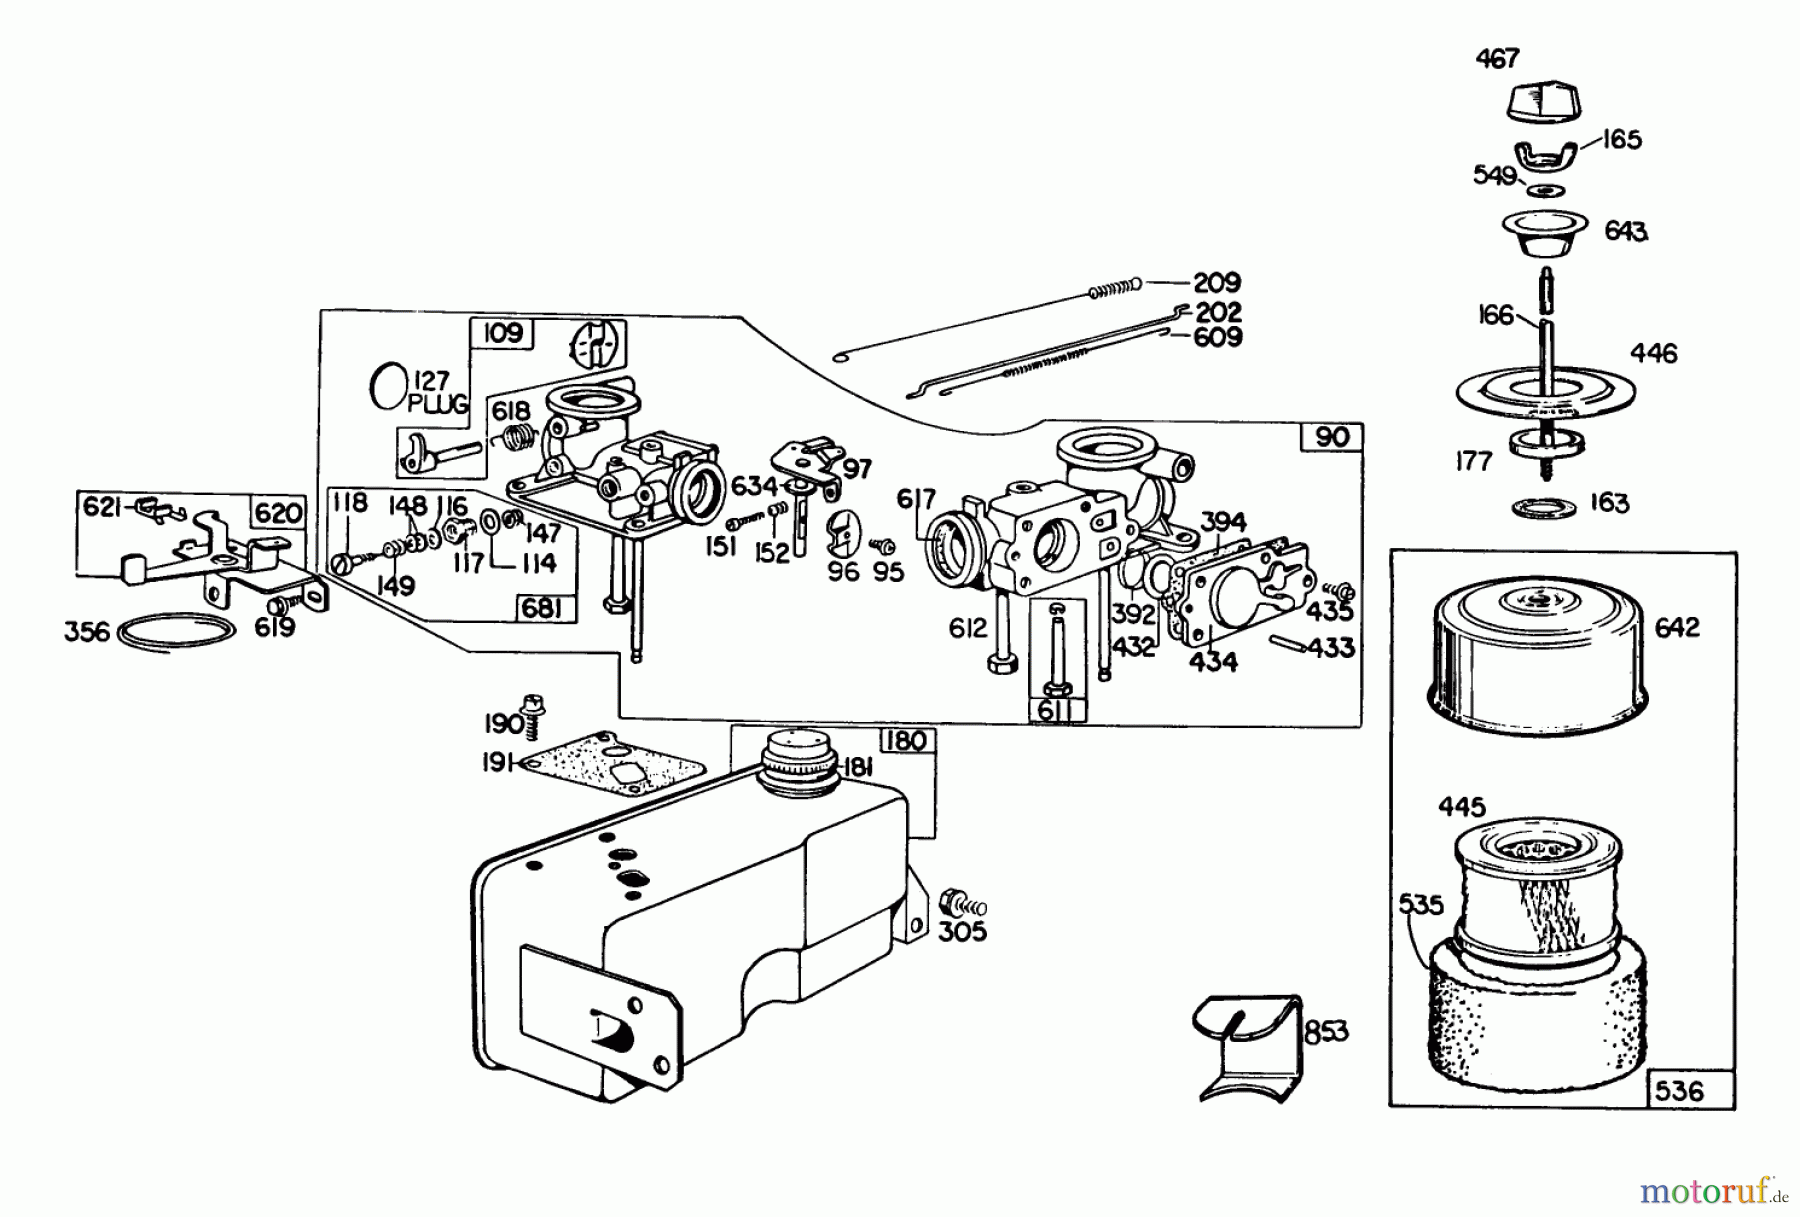  Toro Neu Mowers, Walk-Behind Seite 2 23158 - Toro Lawnmower, 1982 (2000001-2999999) ENGINE BRIGGS & STRATTON MODEL 130902-0543-01 #2